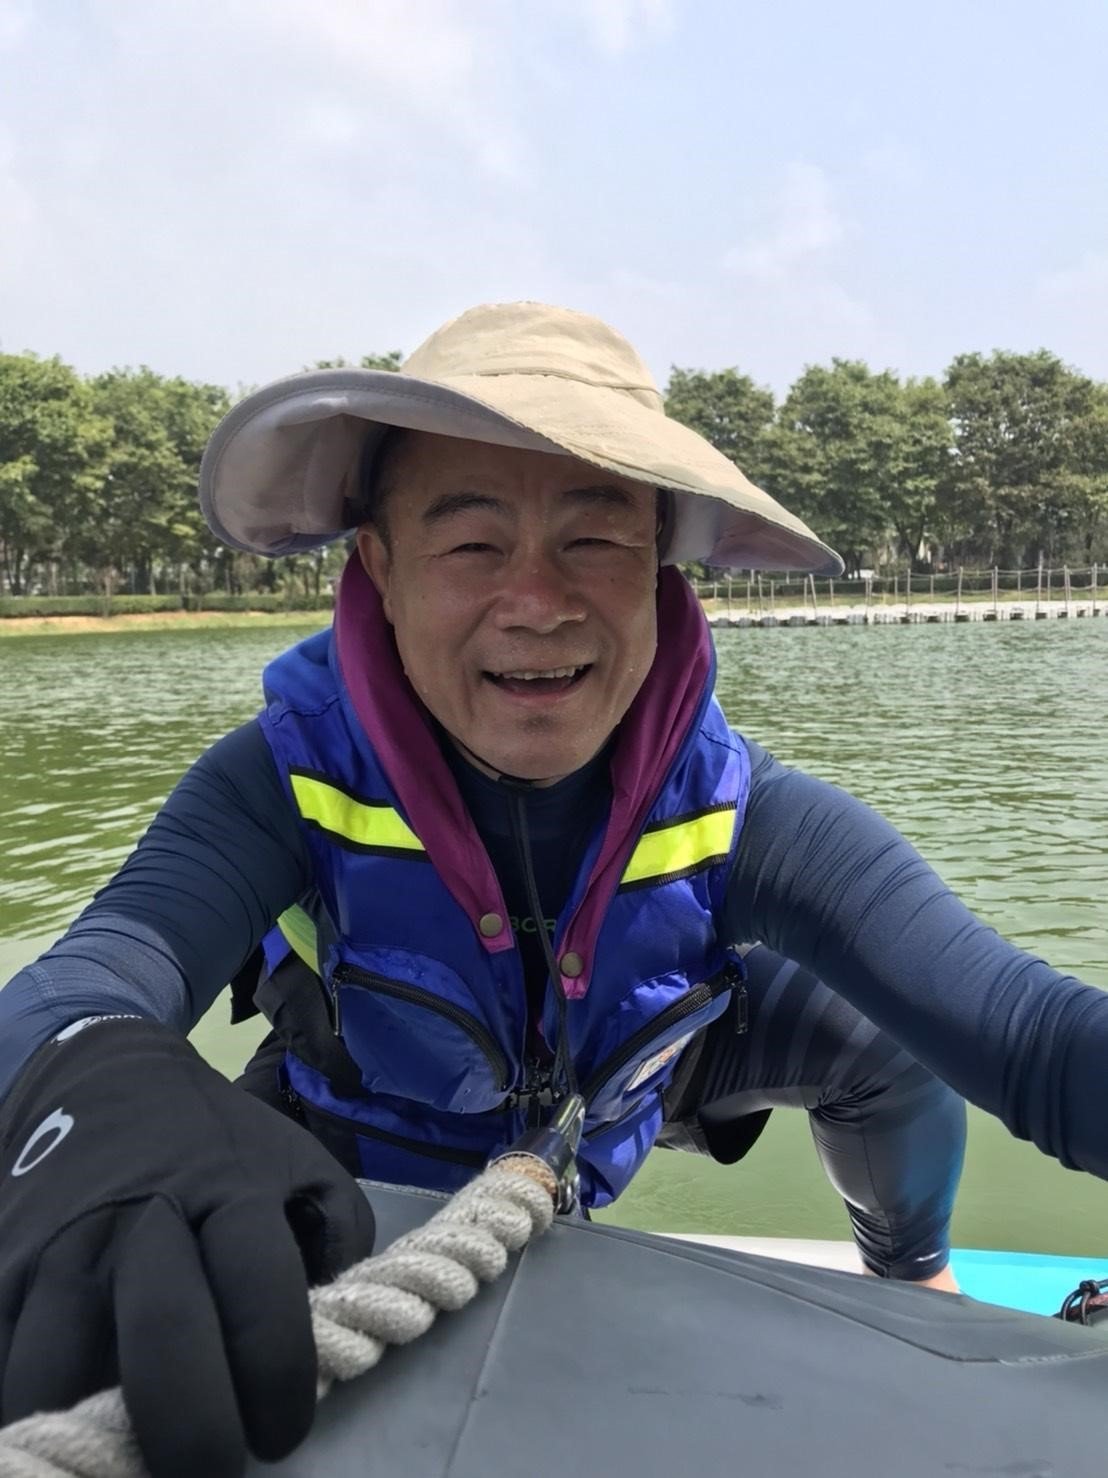 Ông Huang, một người yêu thích thể thao, vô tình rơi xuống nước khi đang học lướt ván. (Ảnh do ông Huang cung cấp)